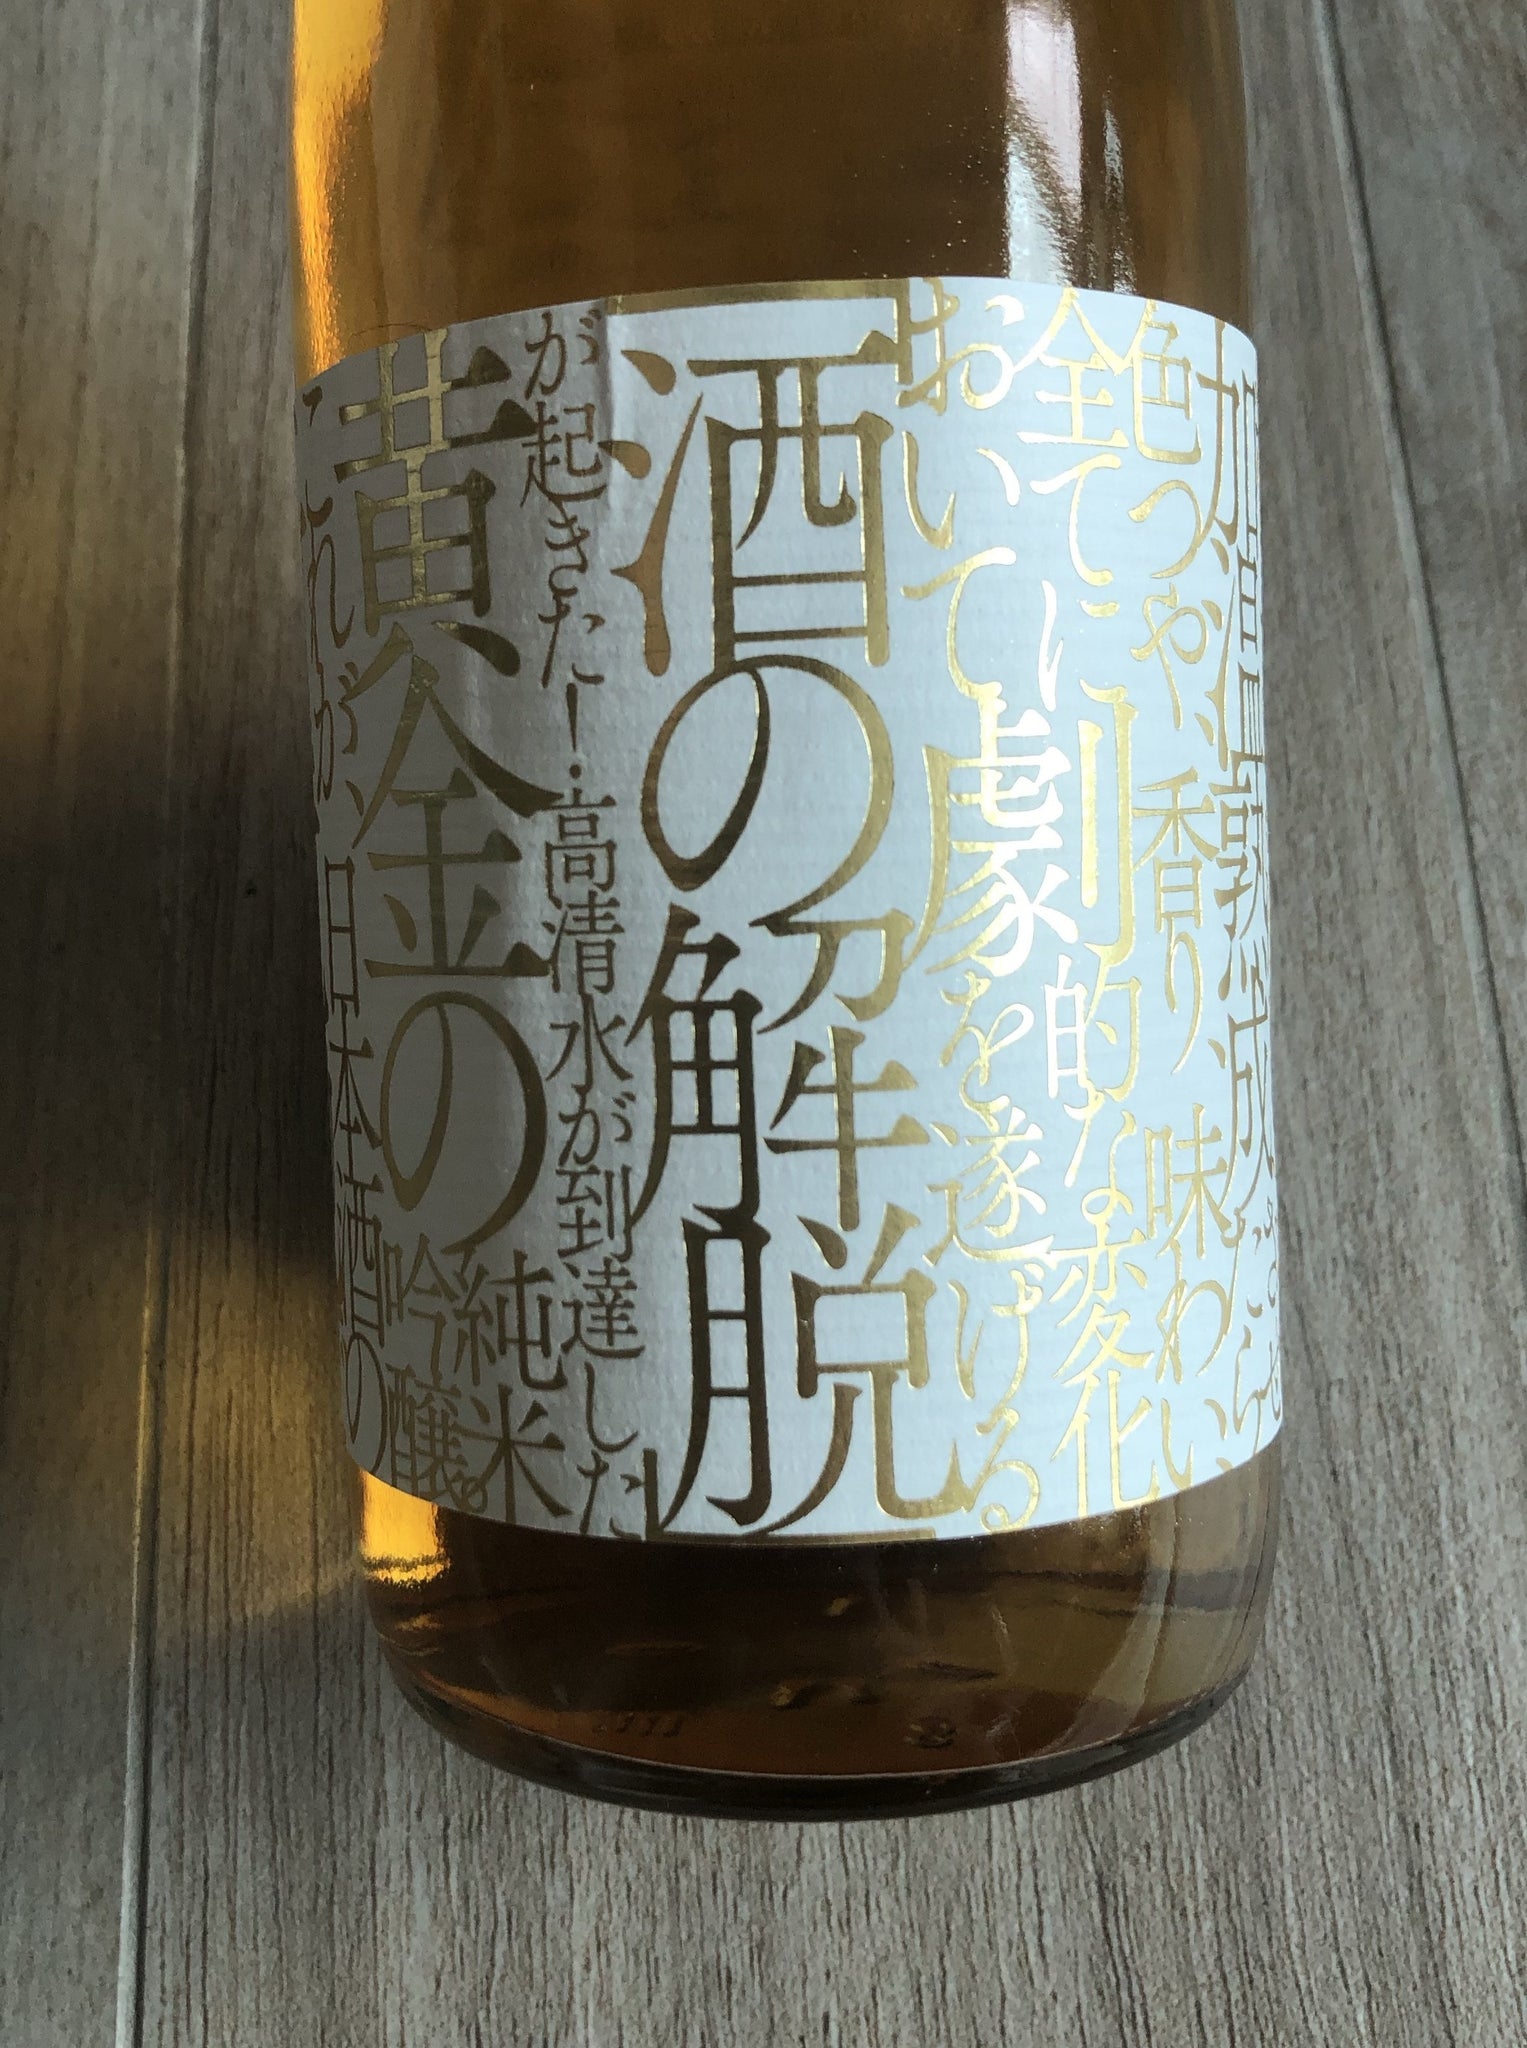 【高清水】 黃金の純米吟釀 加溫熟成解脫酒 古酒 日本清酒 720ml